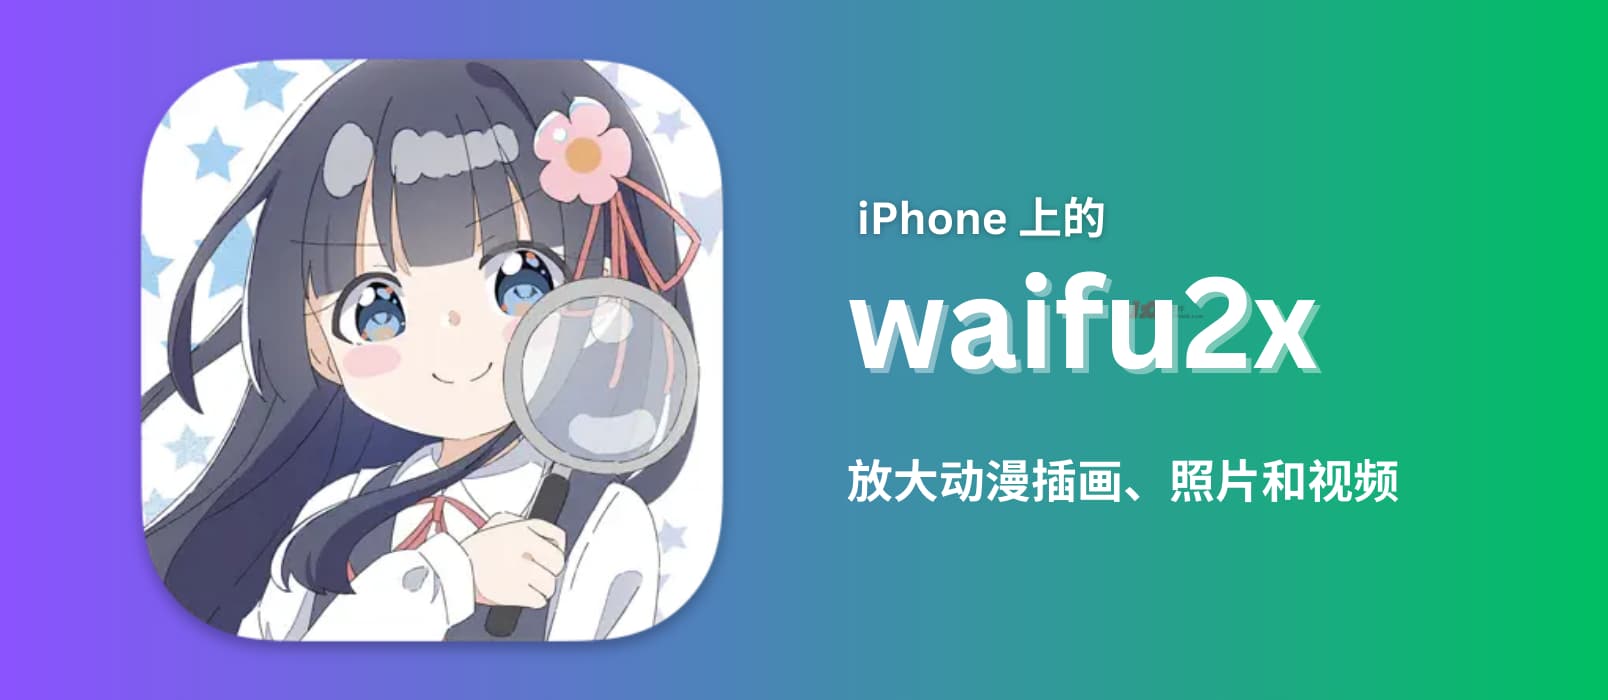 waifu2x - 改善图片和视频画质：iPhone、iPad、Mac 版本